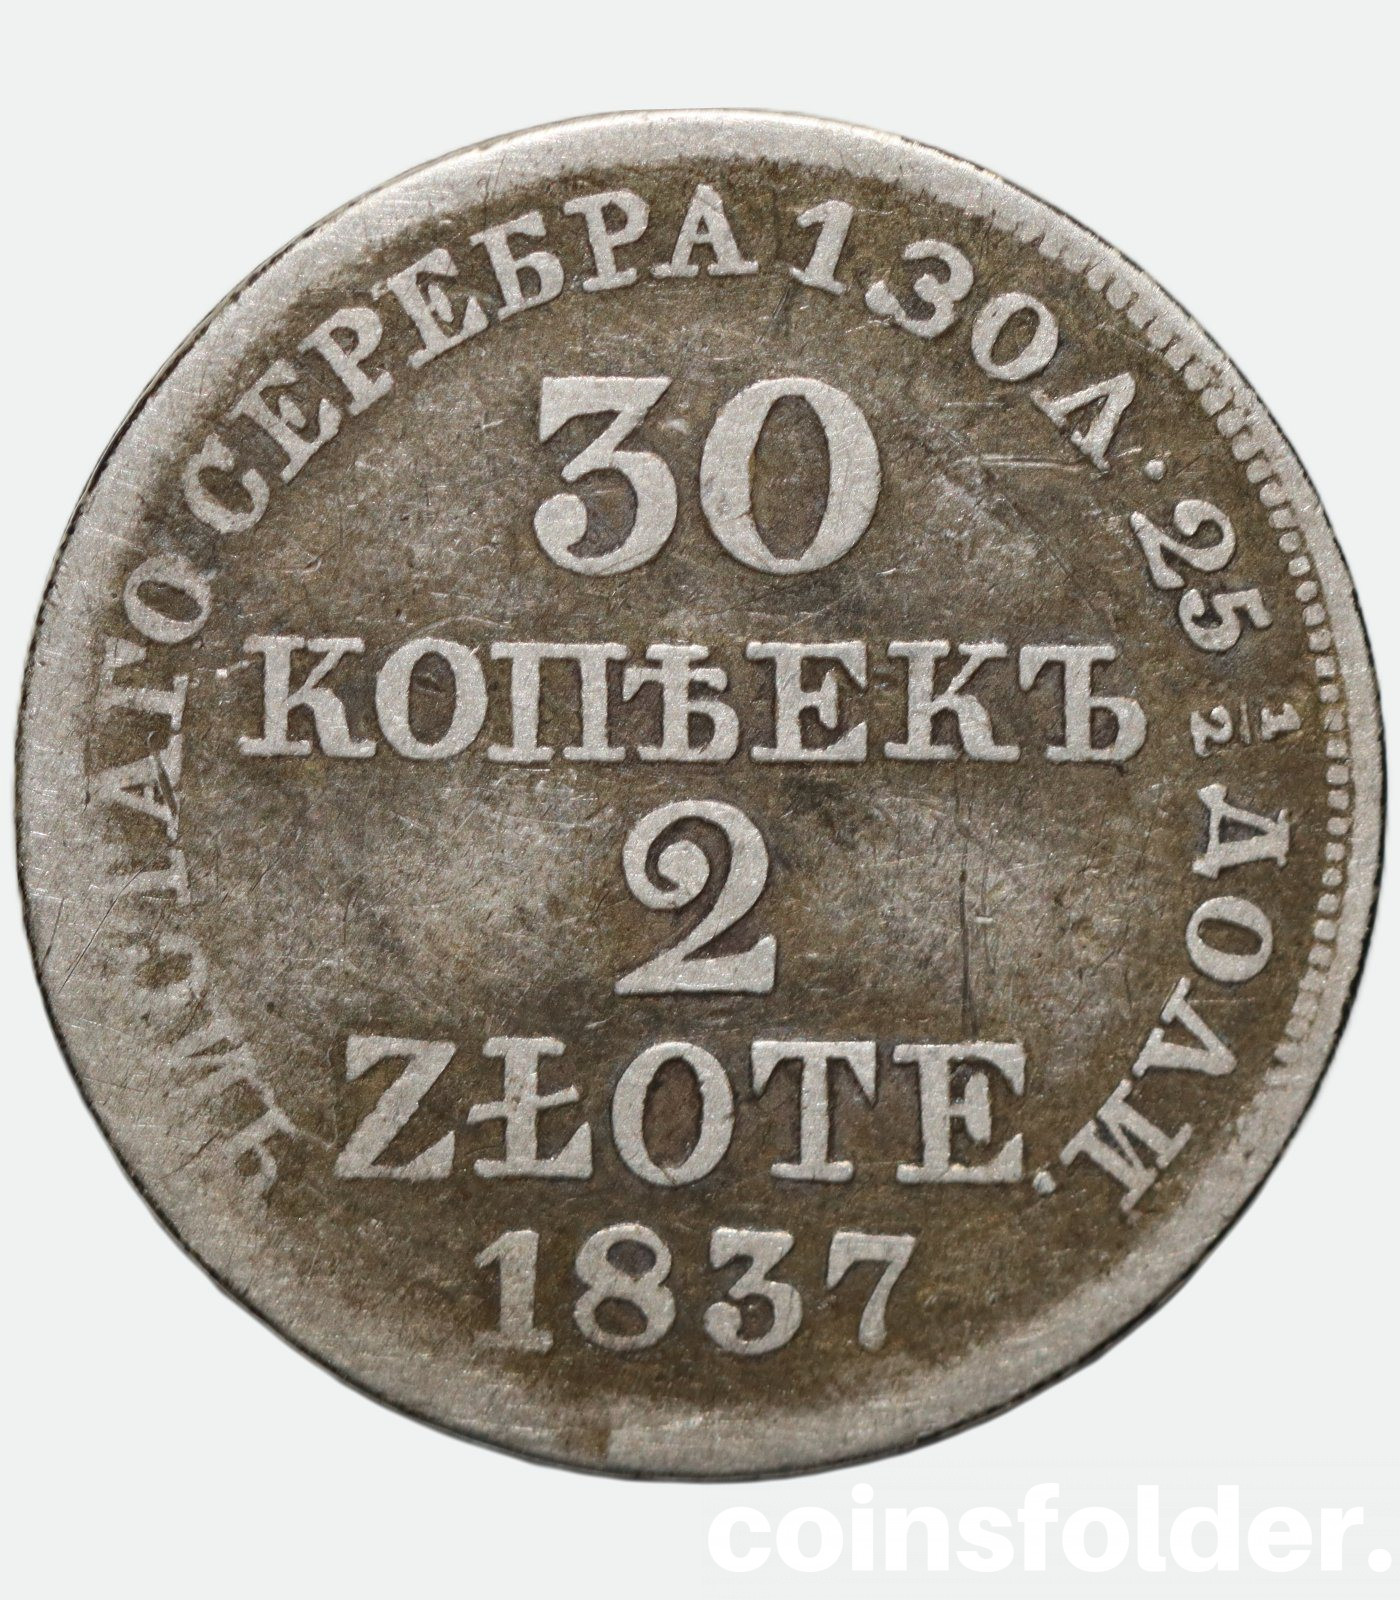 Poland 1836 MW 30 kopecks / 2 zloty